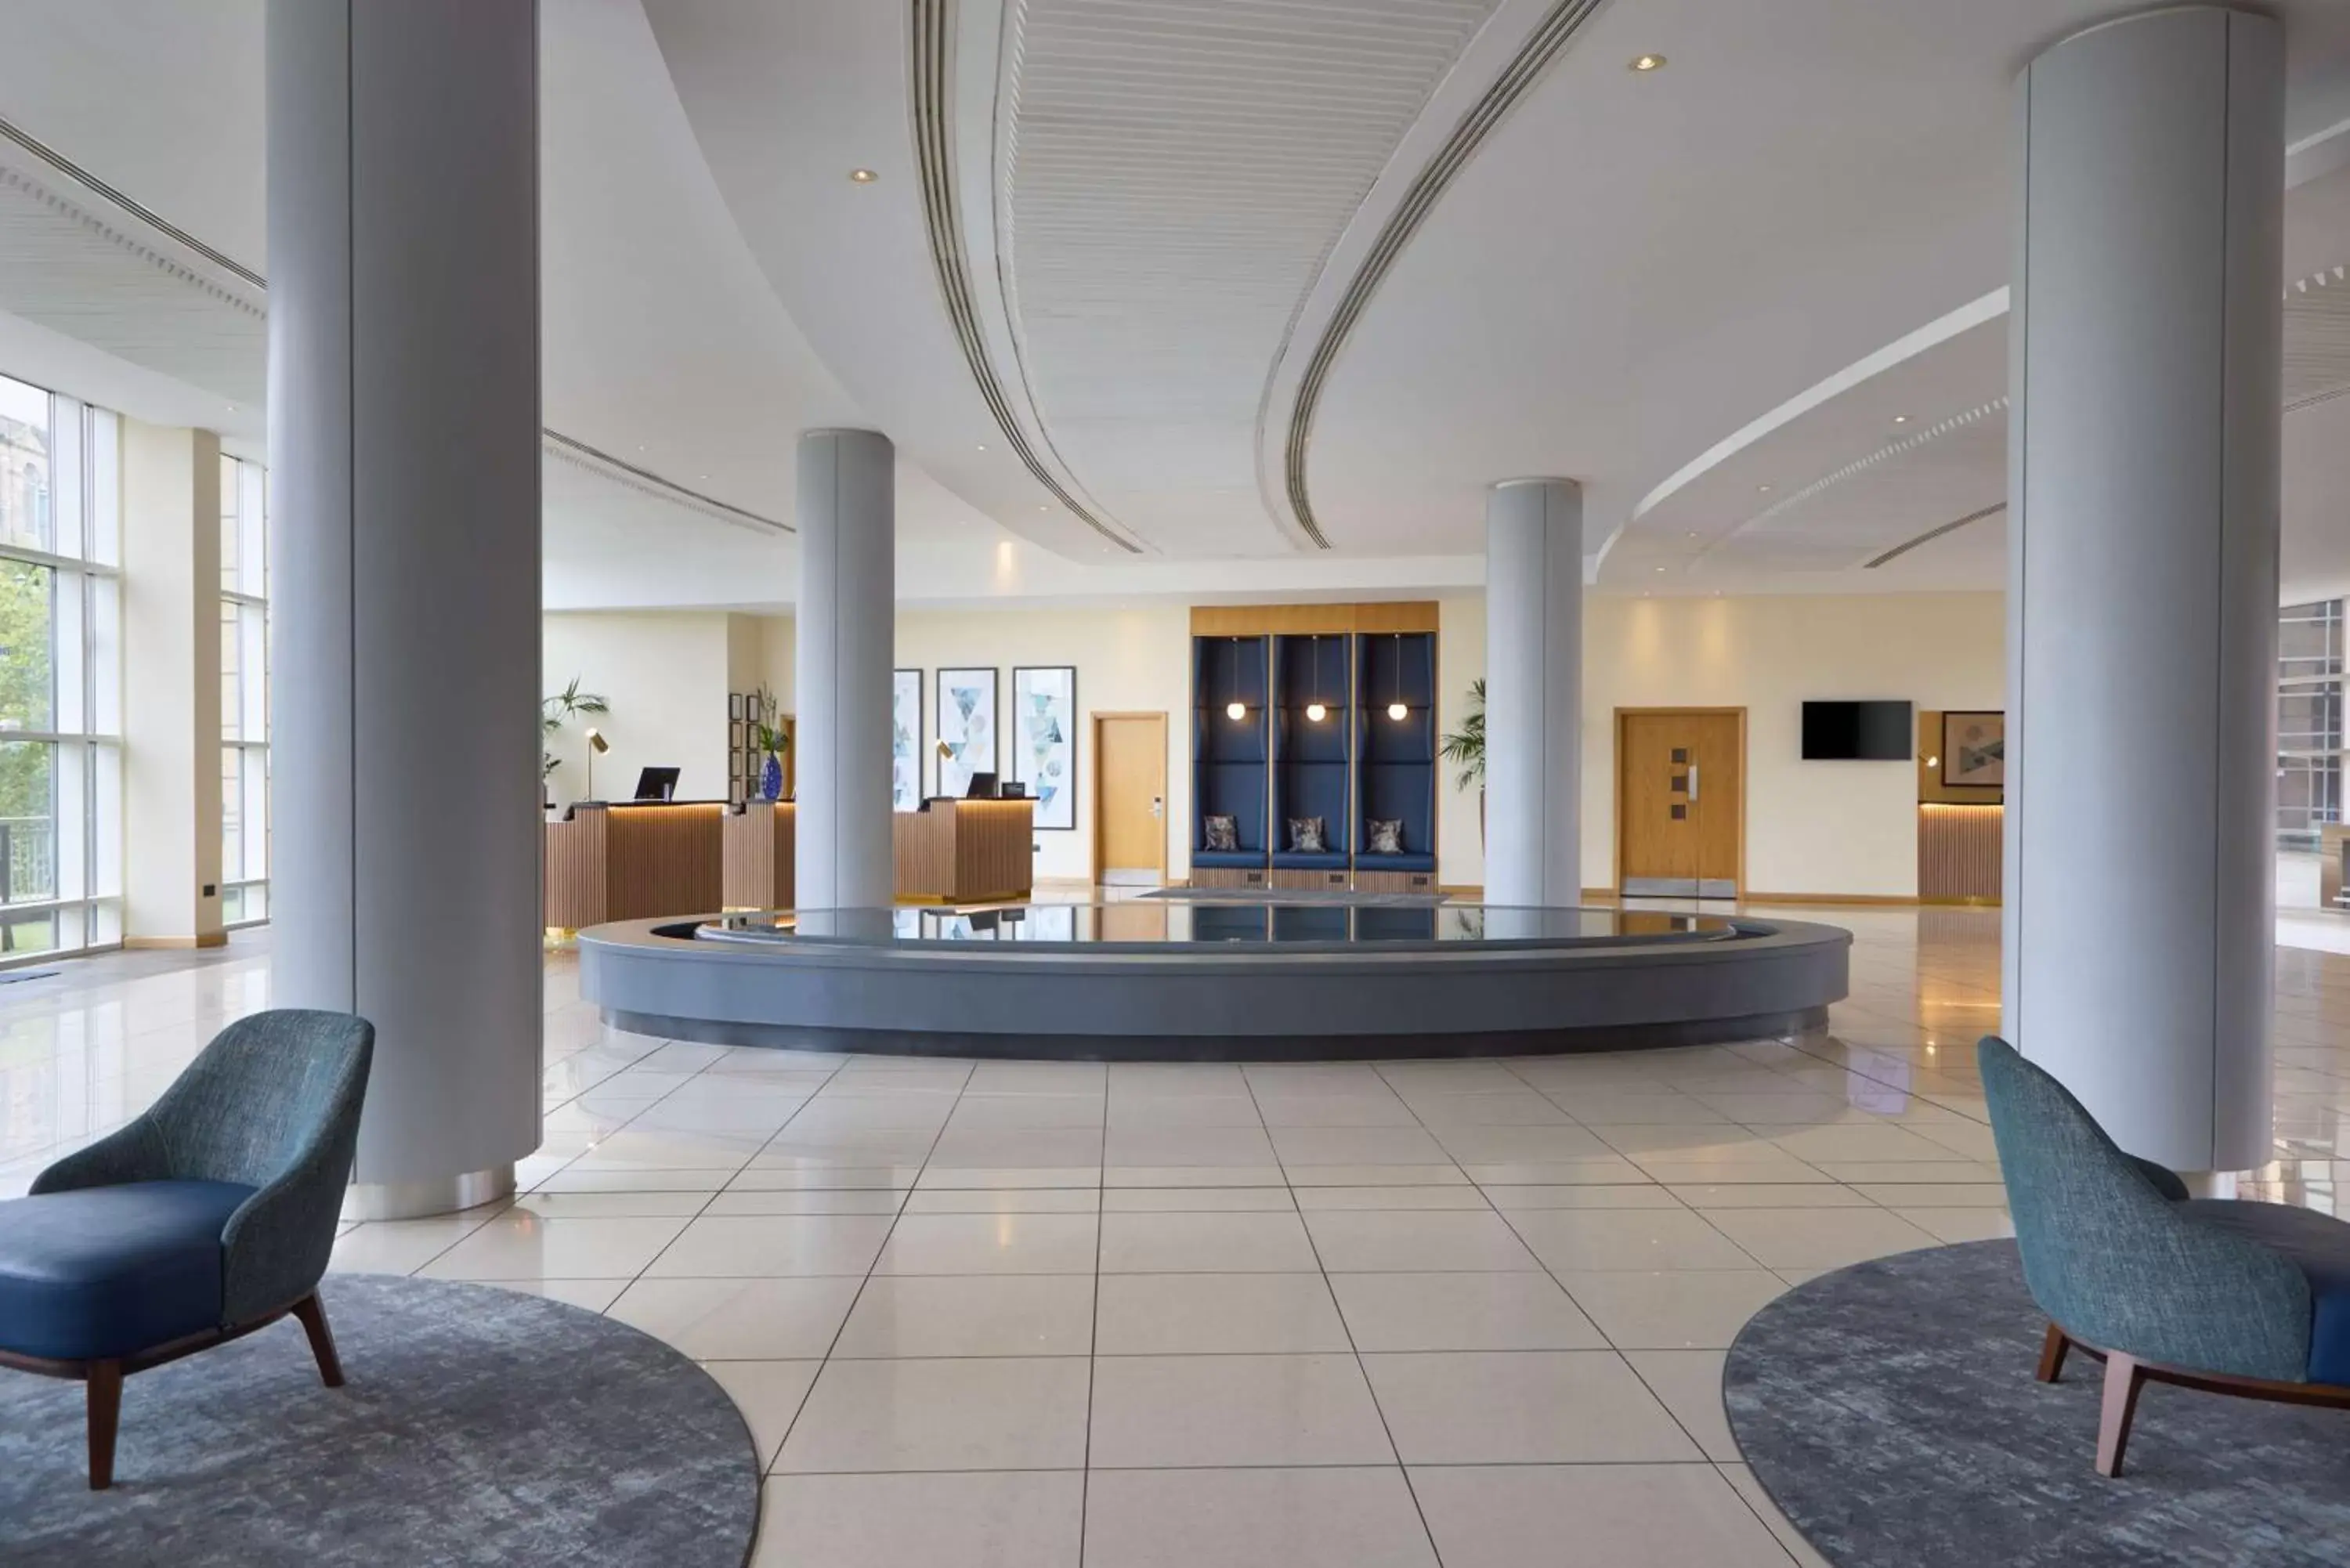 Lobby or reception, Lobby/Reception in Hilton Newcastle Gateshead